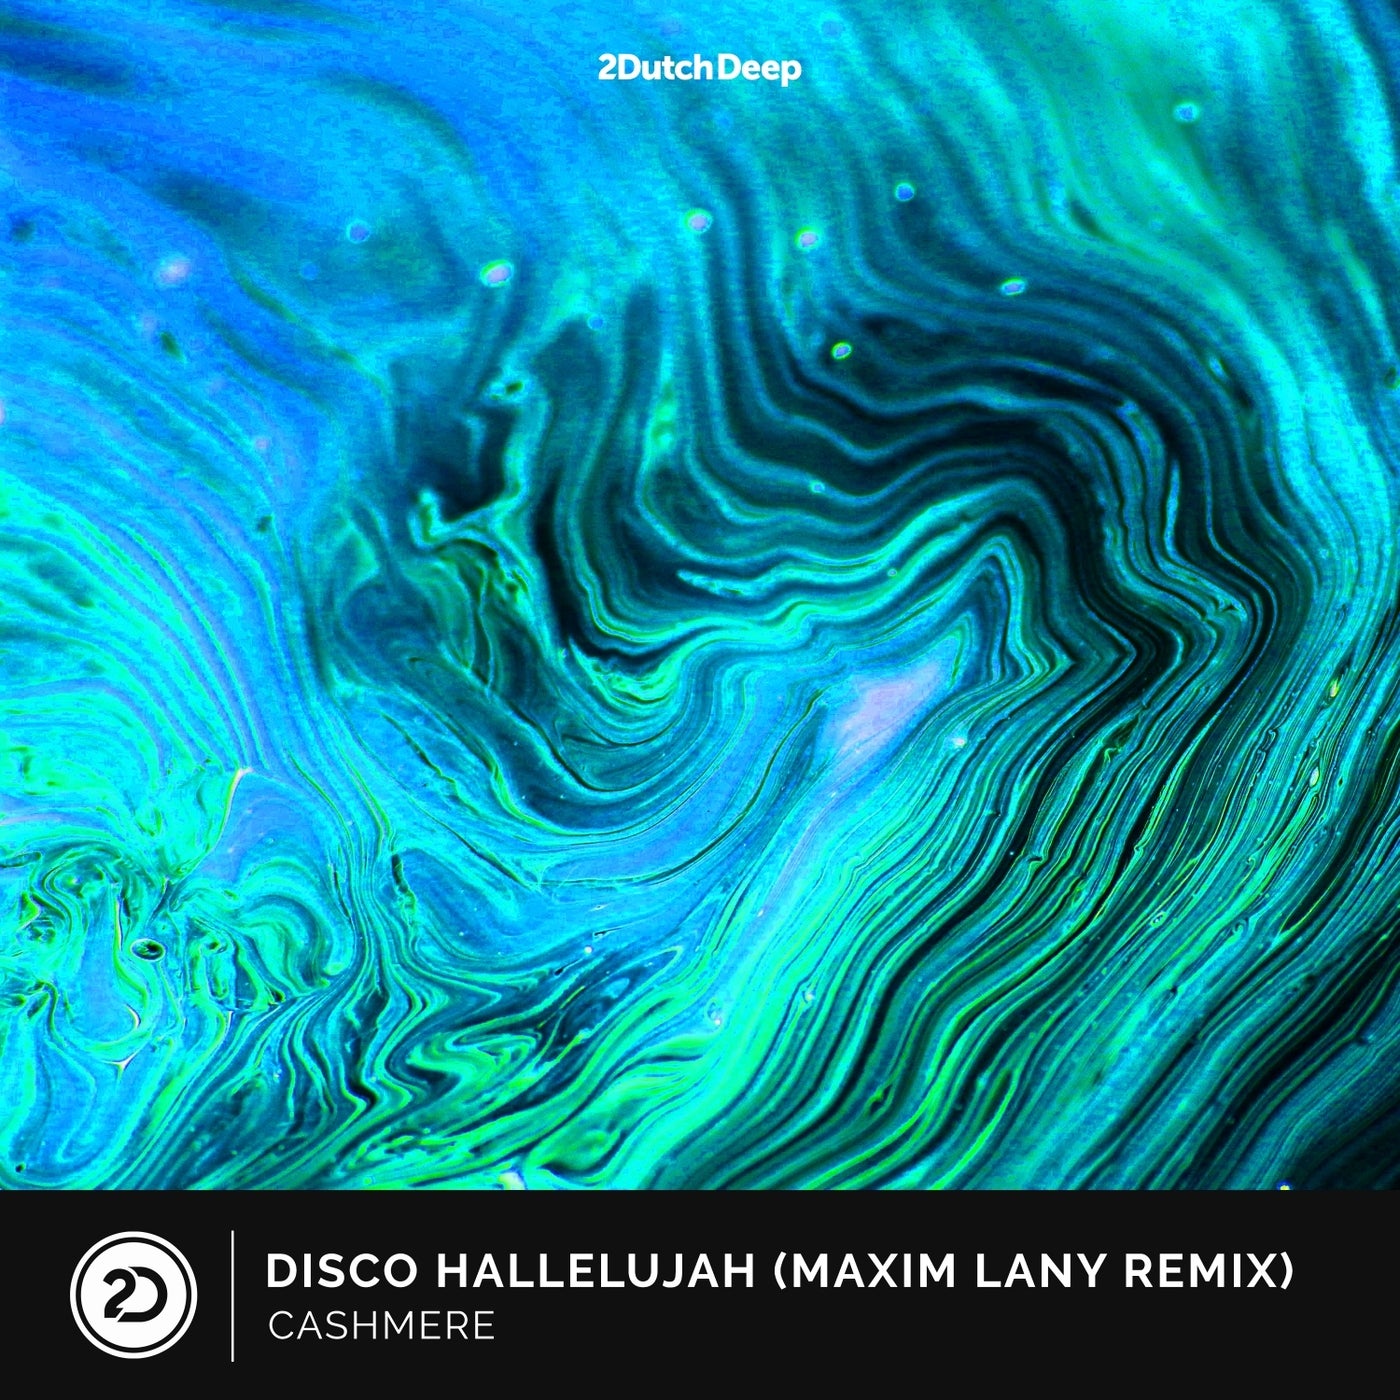 Disco Hallelujah (Maxim Lany Remix)